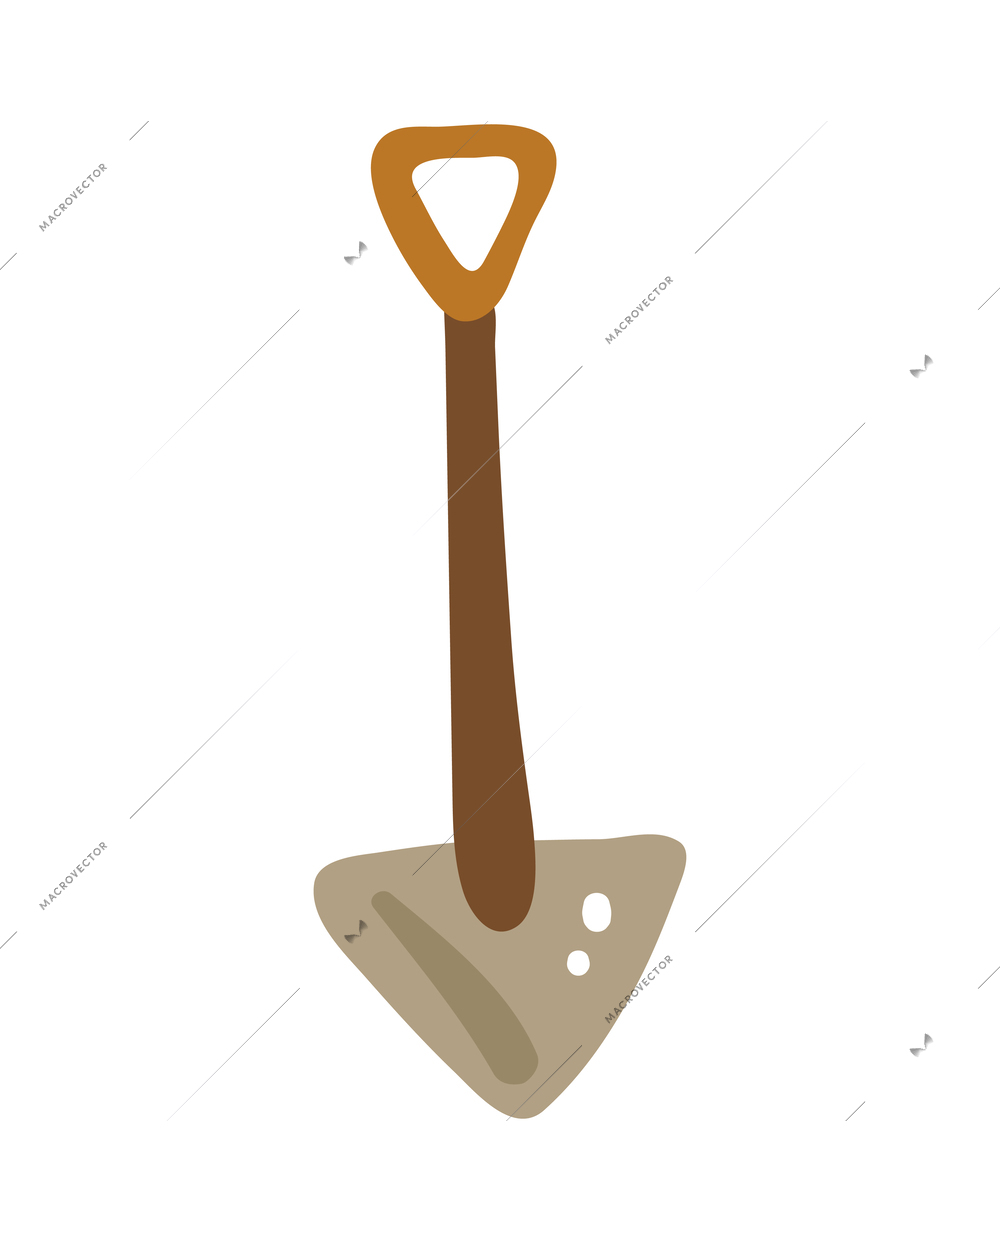 Shovel flat icon isolated on white background vector illustration